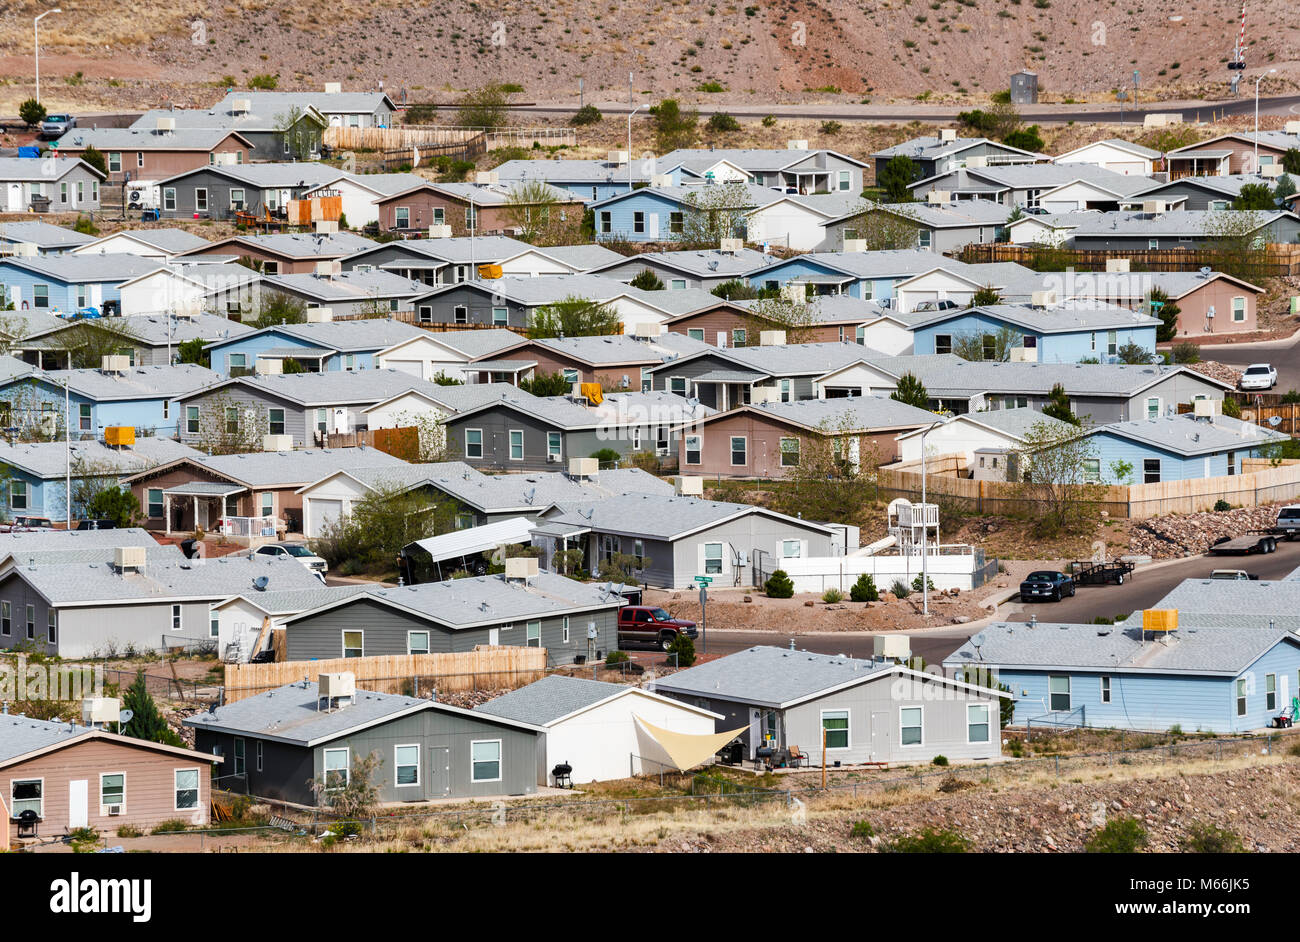 Viviendas unifamiliares en zona residencial en la ciudad de la compañía de Morenci, Arizona, EE.UU. Foto de stock